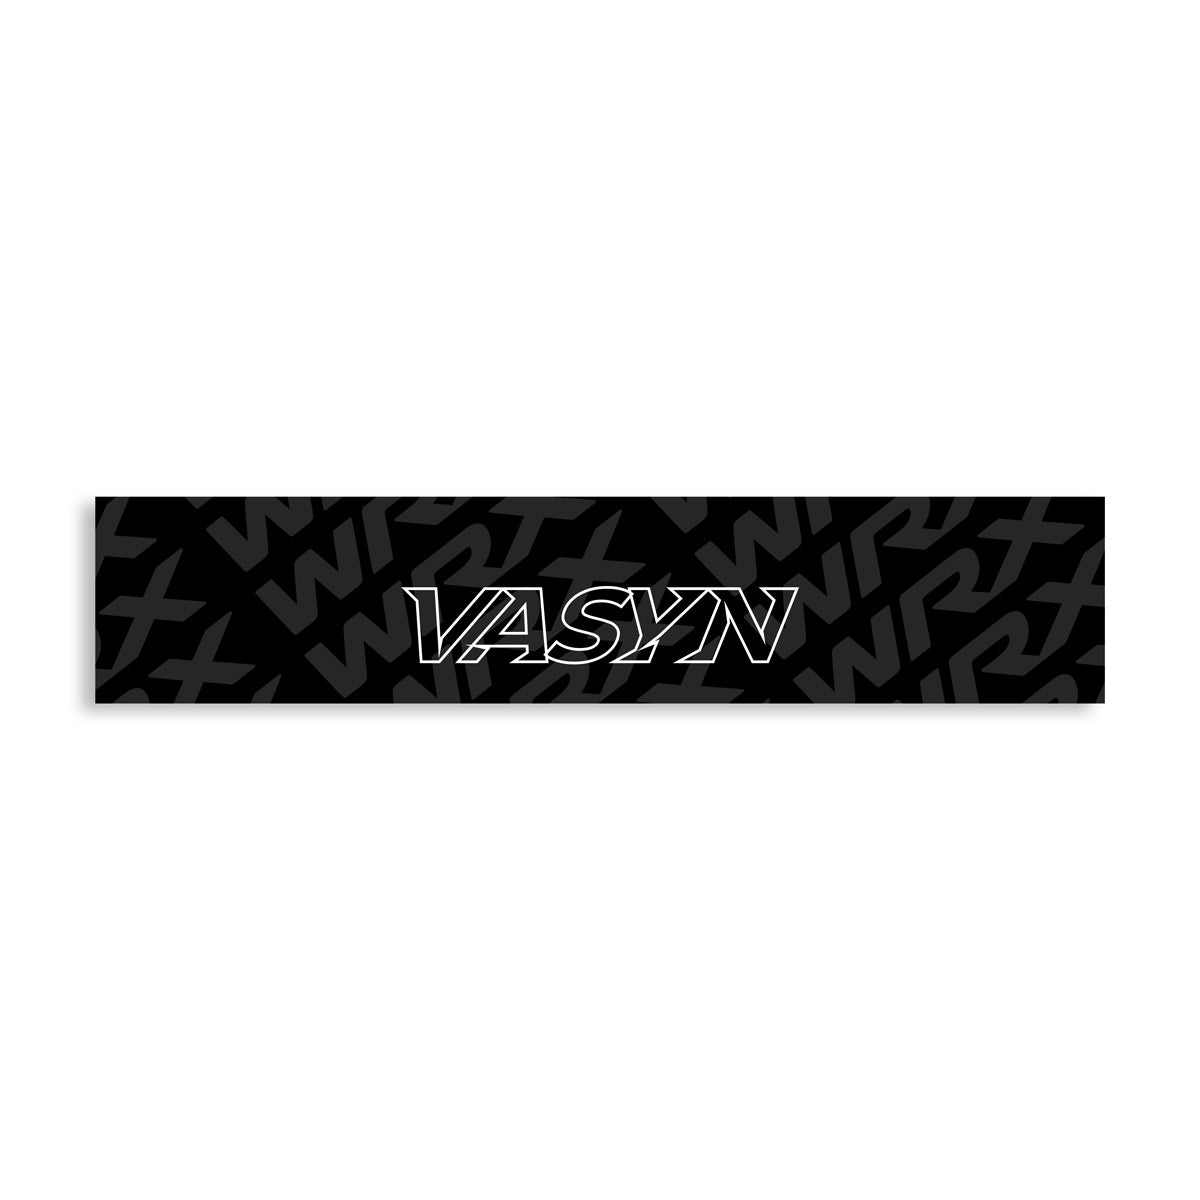 Vasyn x WRX Windshield Banner - Blackout